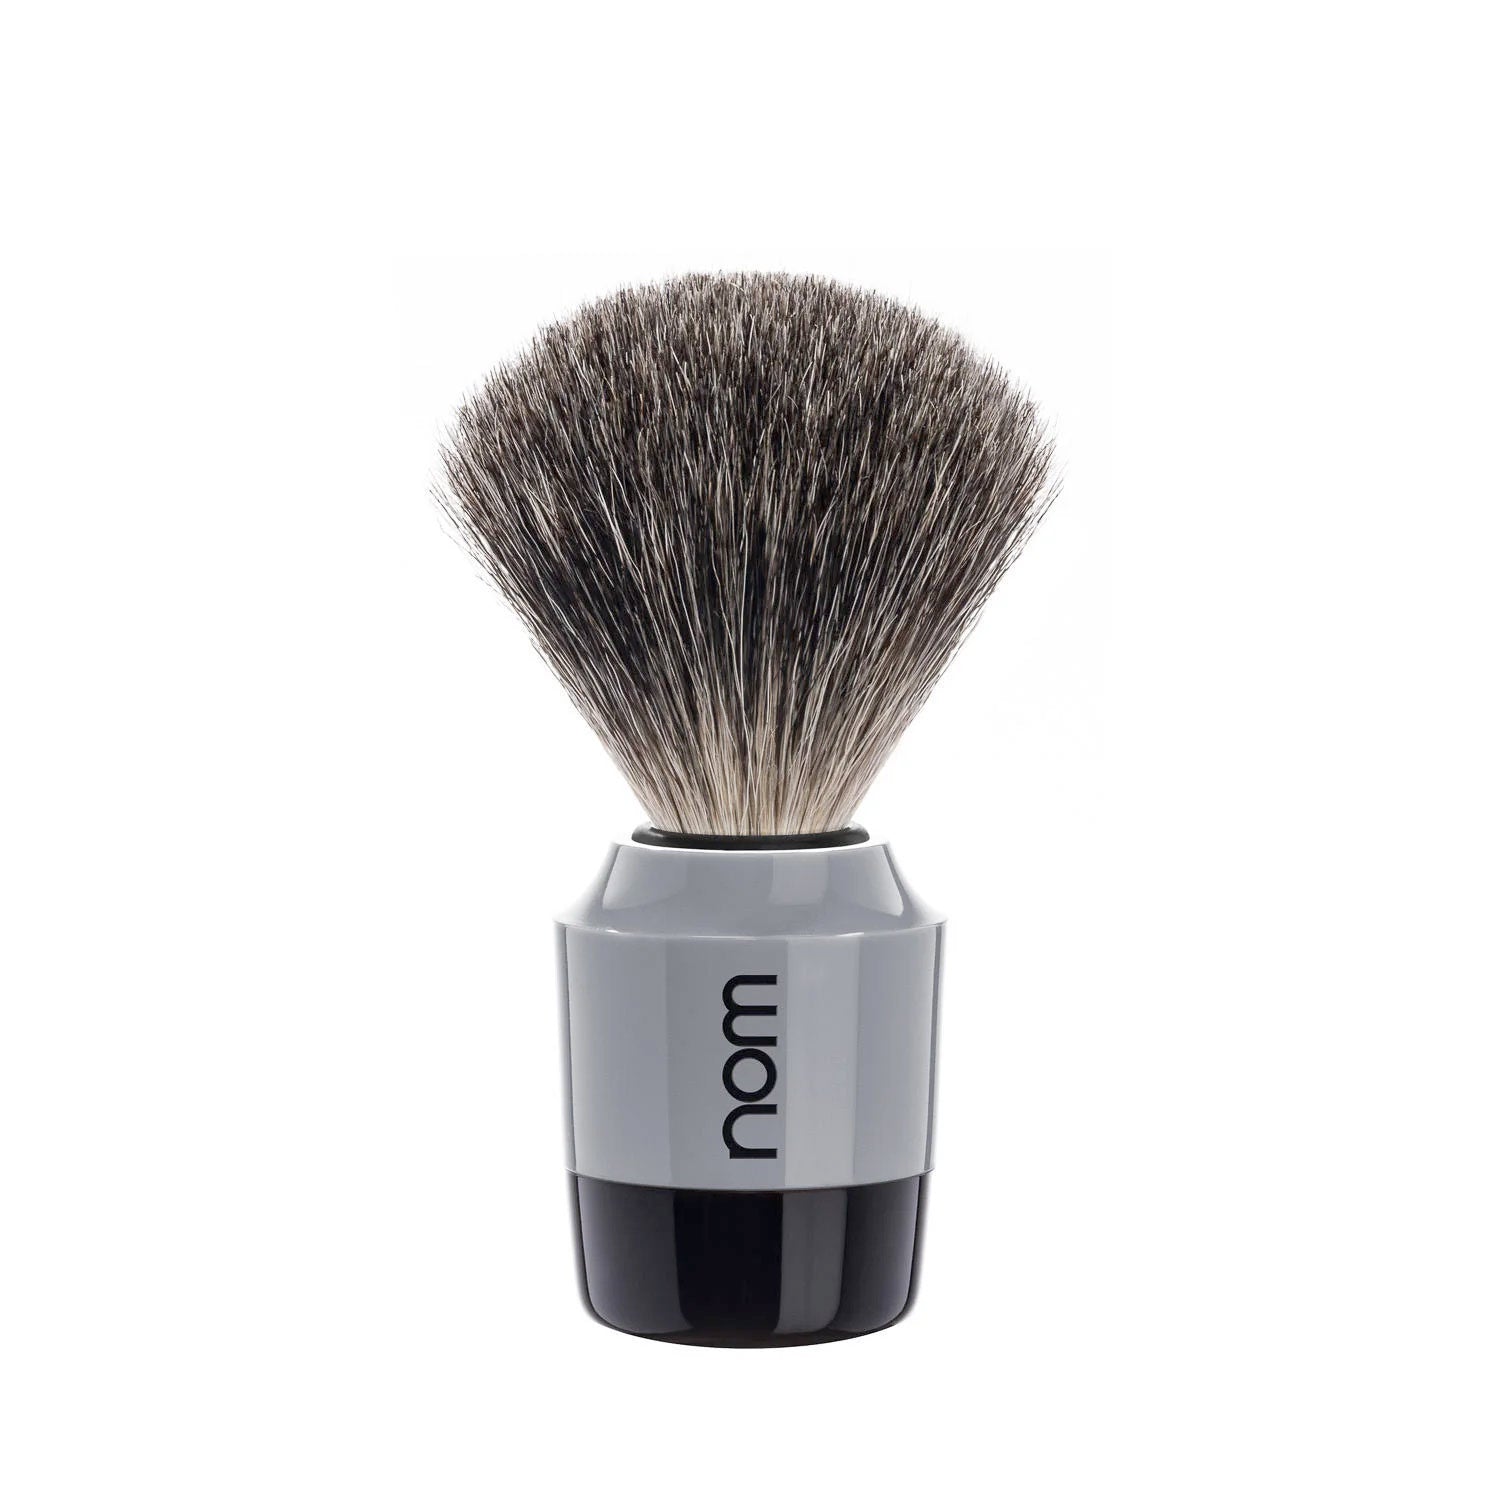 nom MARTEN Pure Badger Shaving Brush in Grey